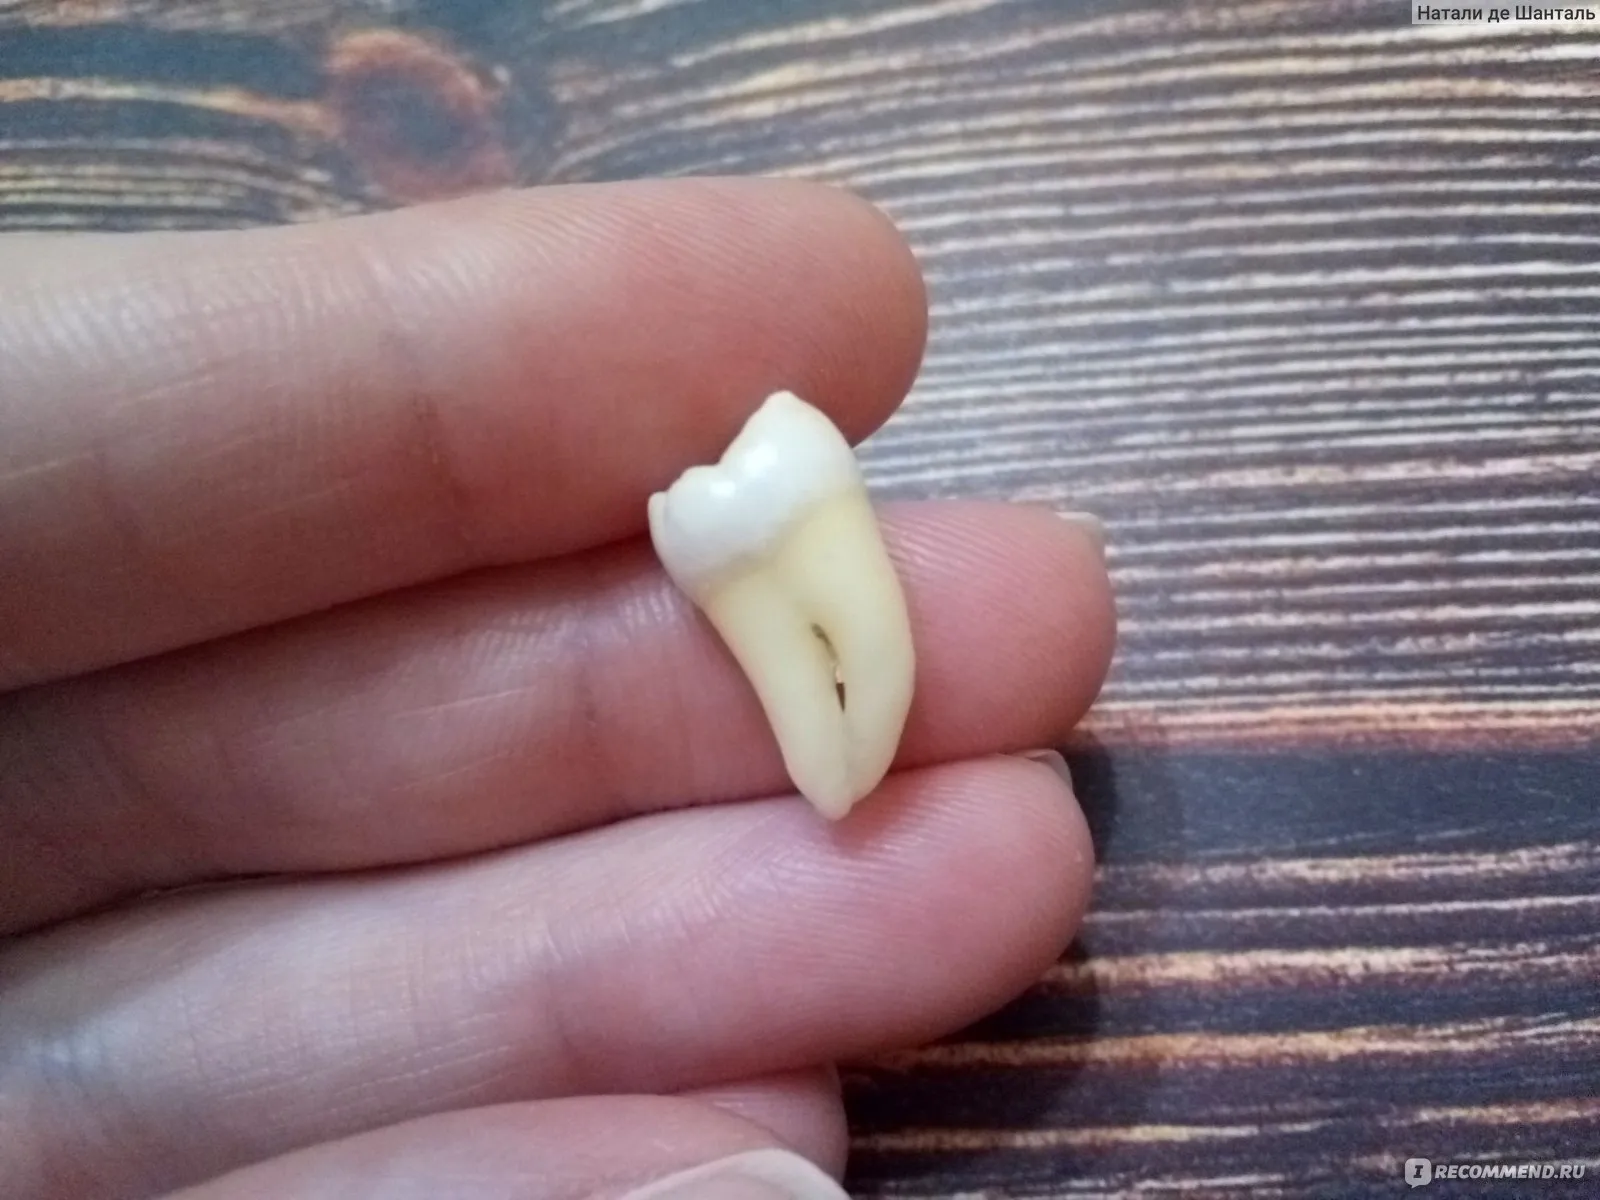 Сонник выпадение зубов без крови. Как выглядит удаленный зуб. Заживление зуба мудрости. Удаленный зуб мудрости фото.